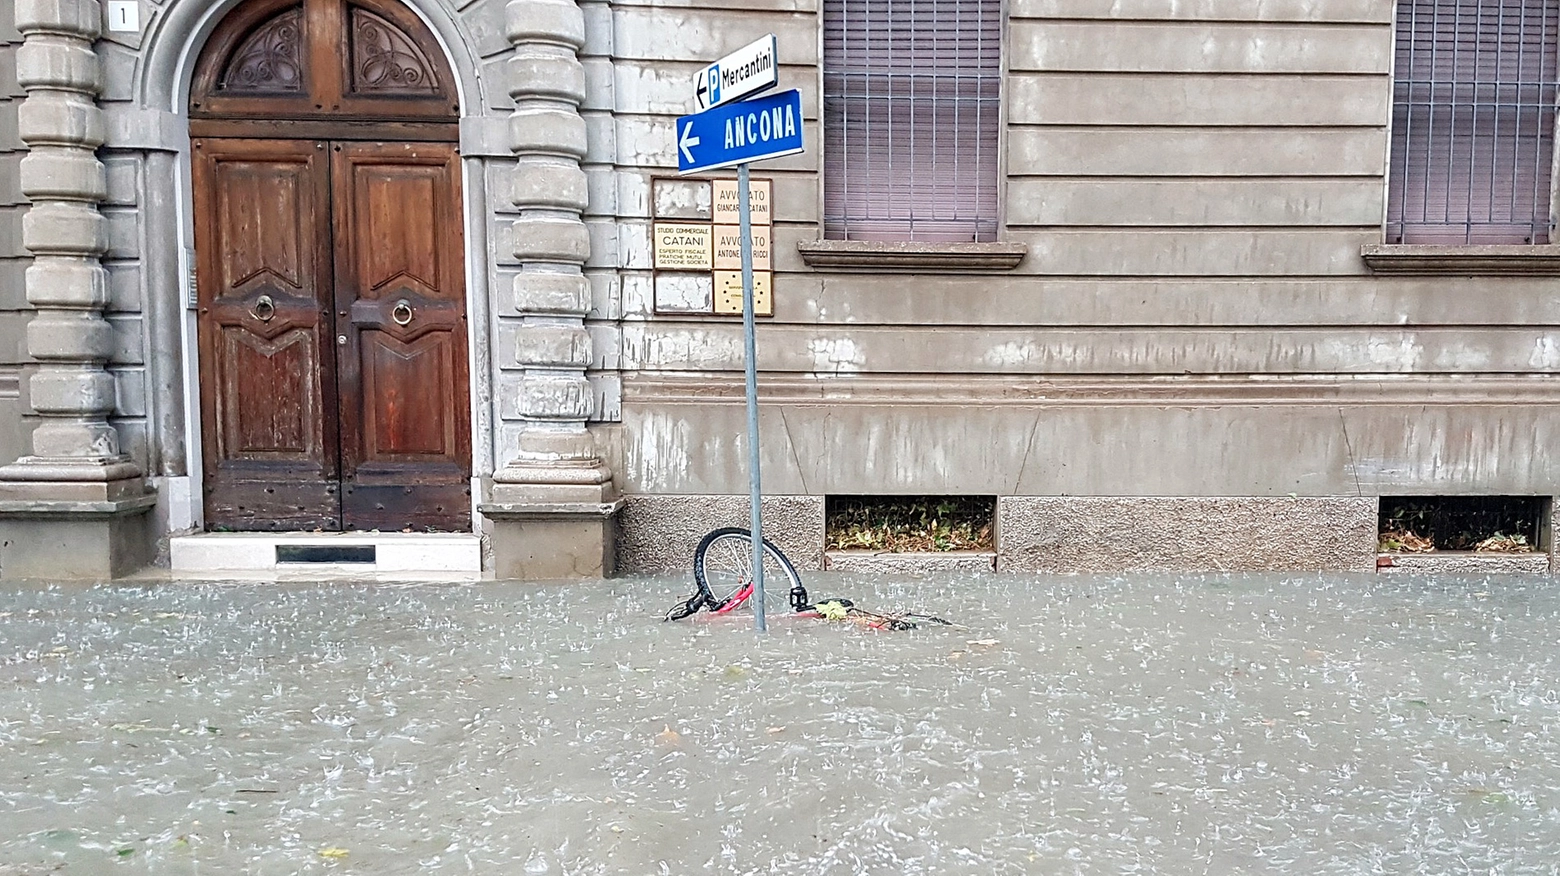 Bomba d'acqua ad Ancona e provincia (FotoBinci)